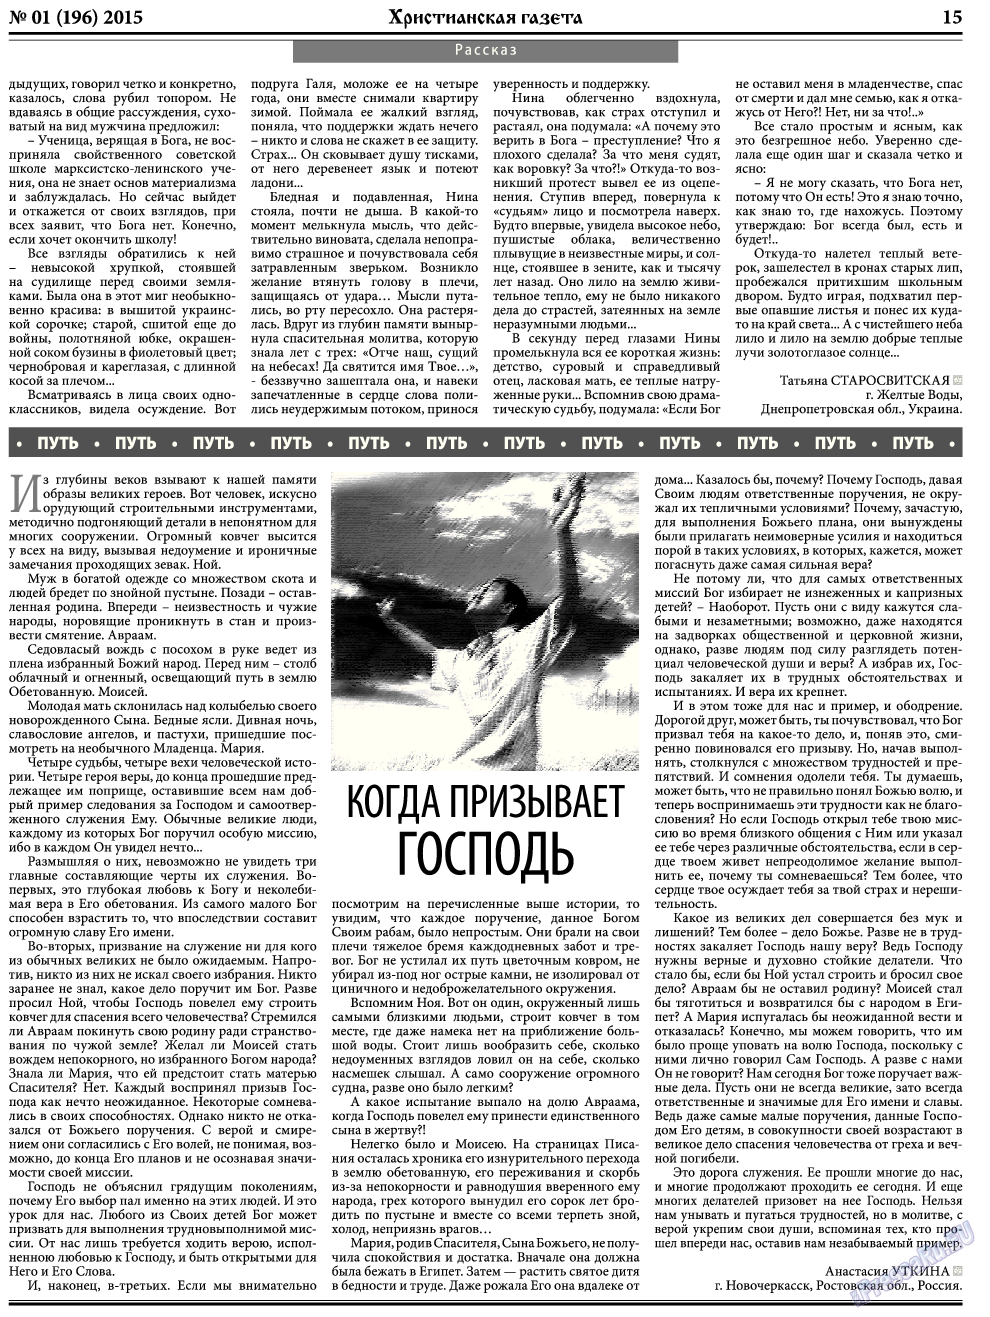 Христианская газета, газета. 2015 №1 стр.23